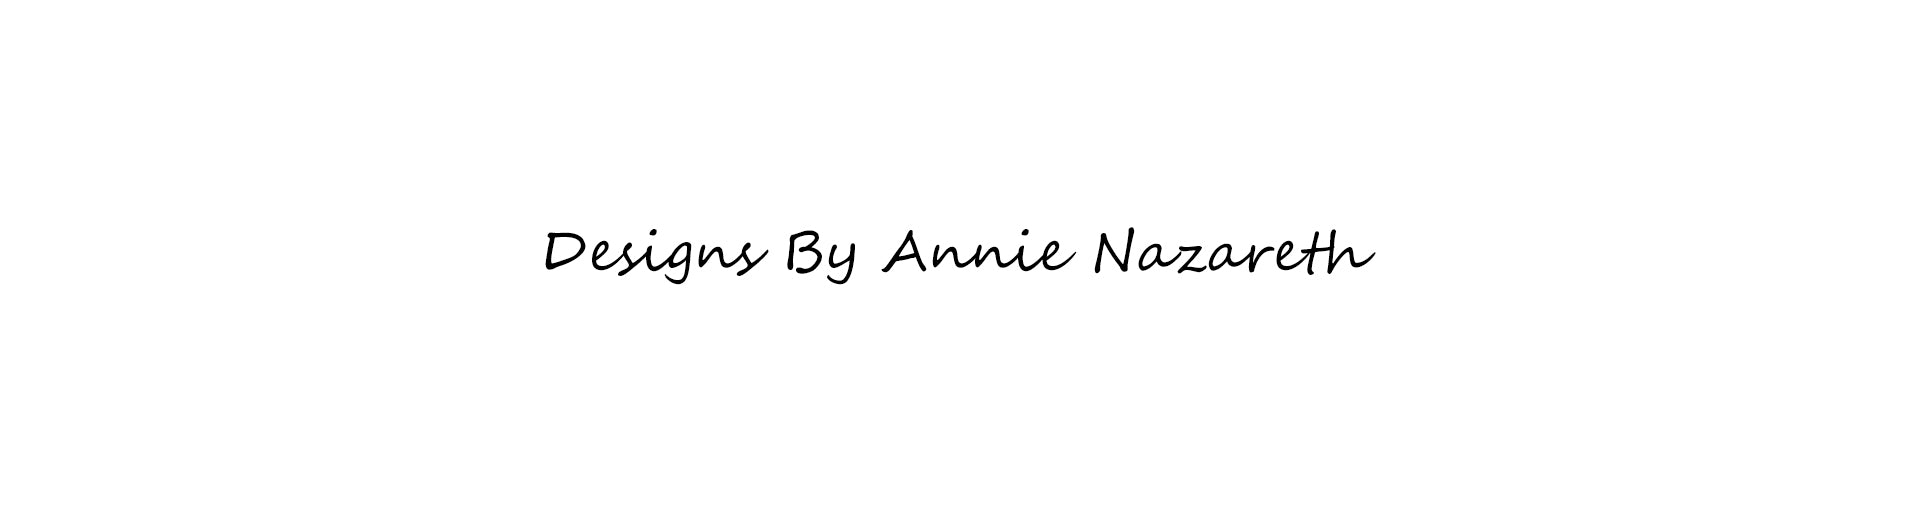 Annie Nazareth